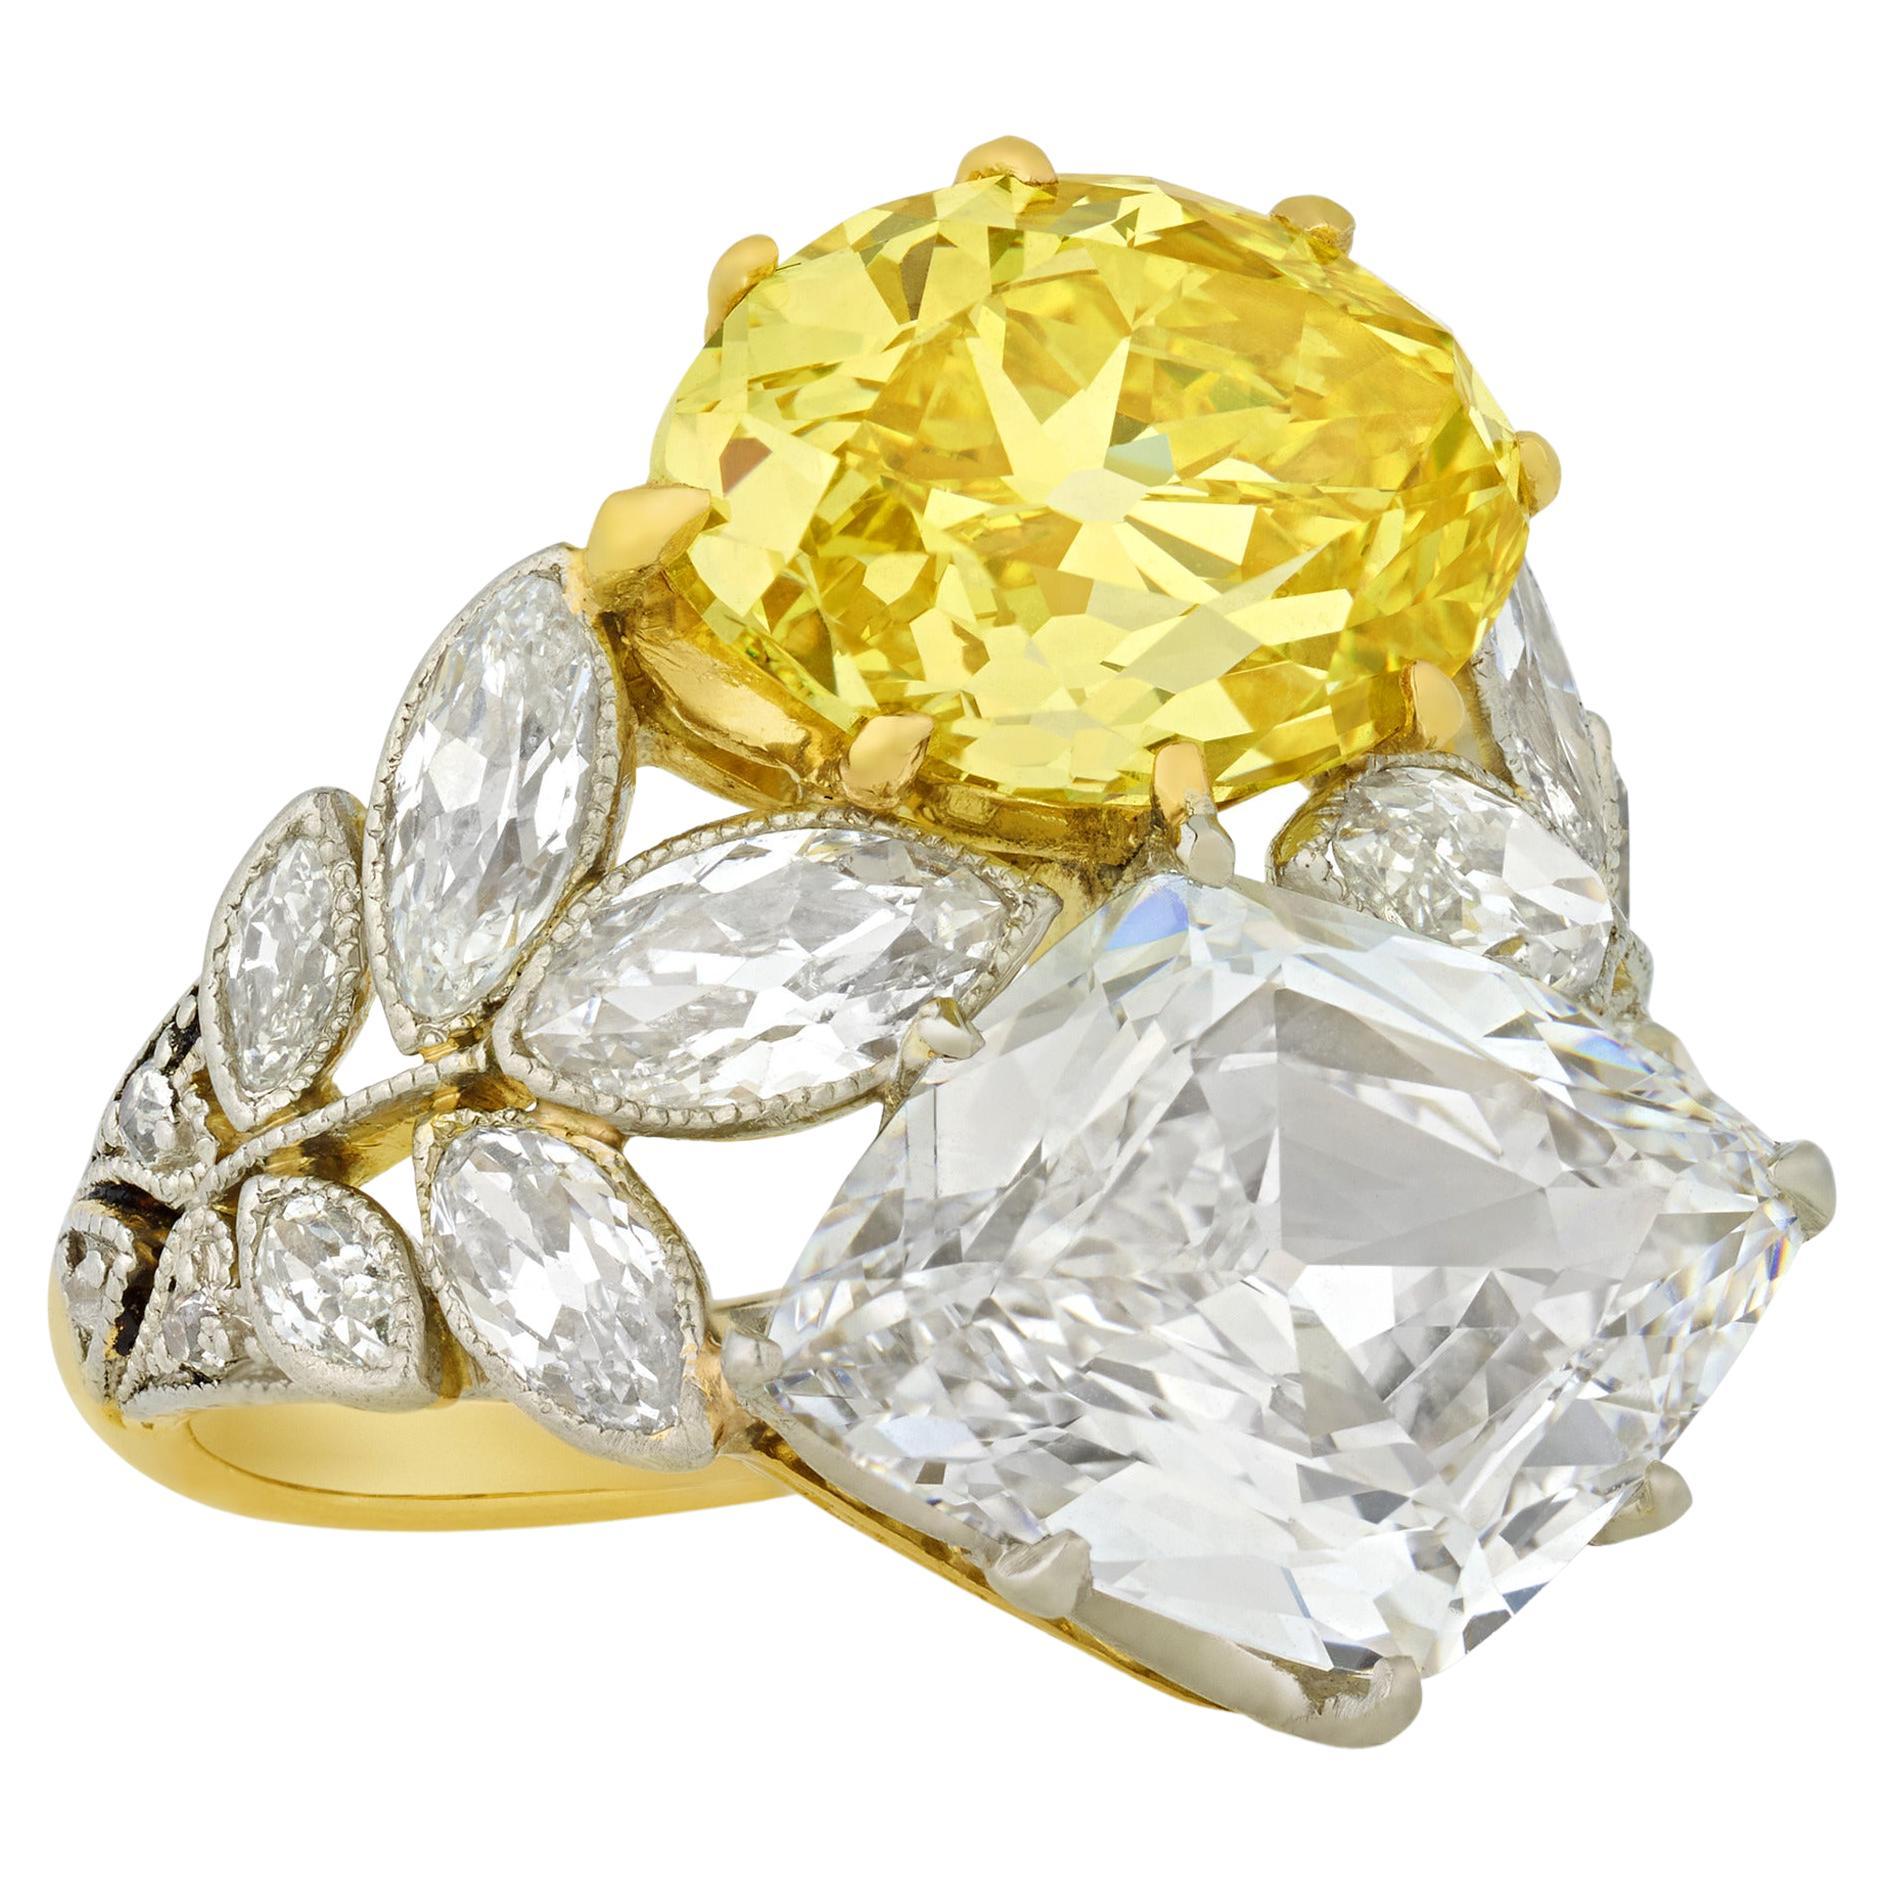 Ausgefallener Vivid Yellow and White Diamond Ring